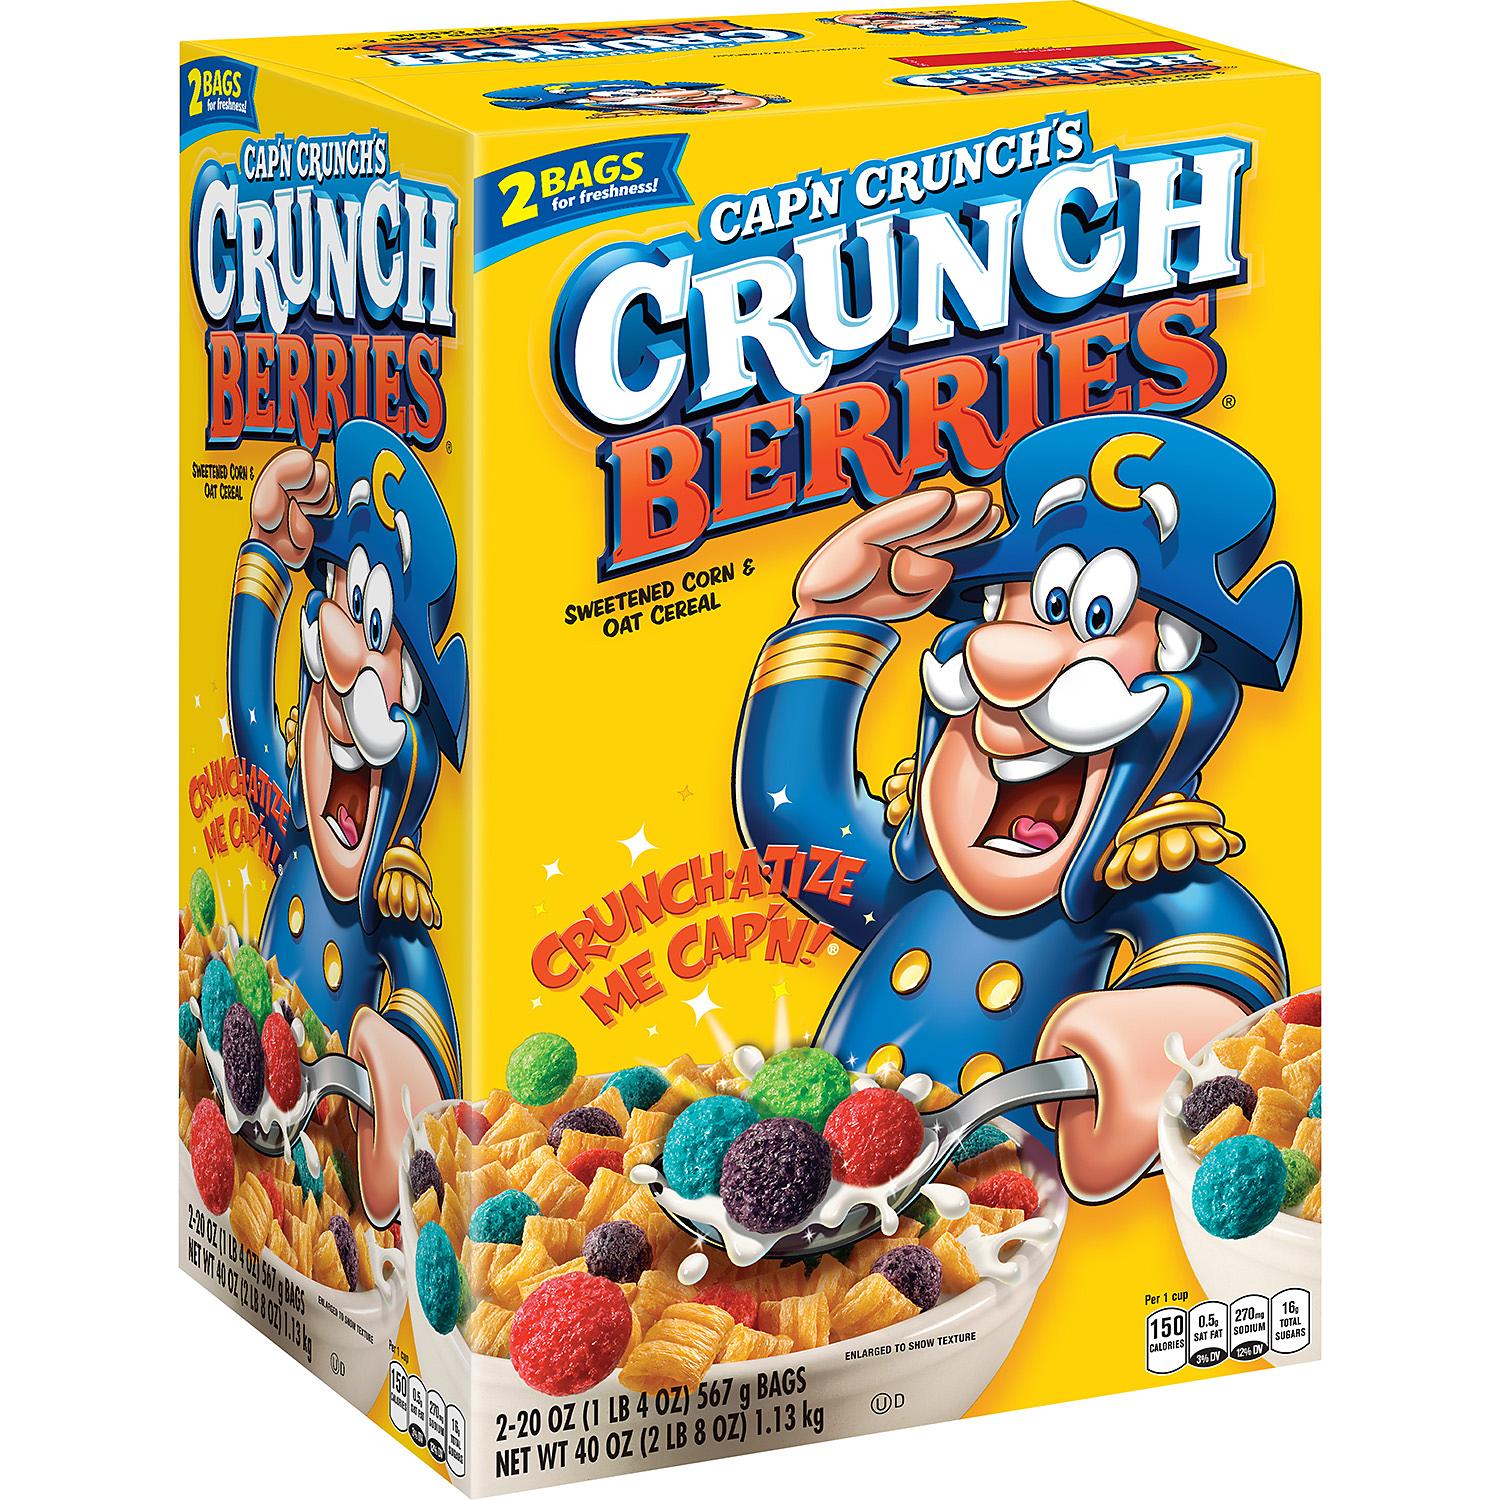 Cap'n Crunch's Crunch Berries Sweetened Corn & Oat Cereal